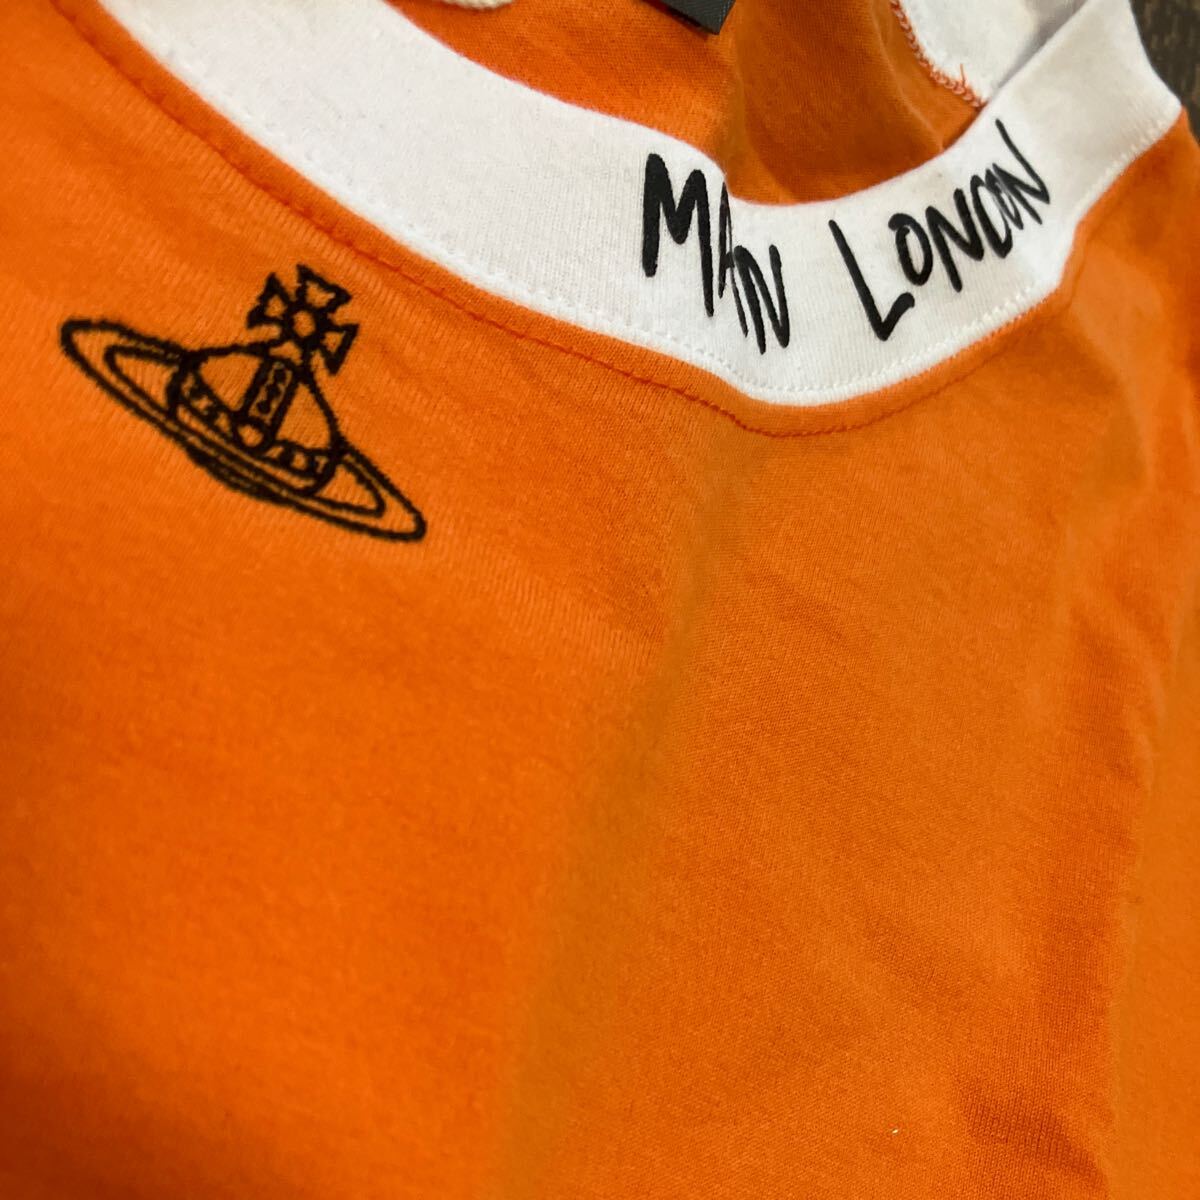  стоимость доставки включена  ● новый товар ● Vivienne Westwood  длинный рукав   футболка 42A оранжевый  ...T  сделано в Японии  ...  хлопок  100% ... талия  дерево   ...